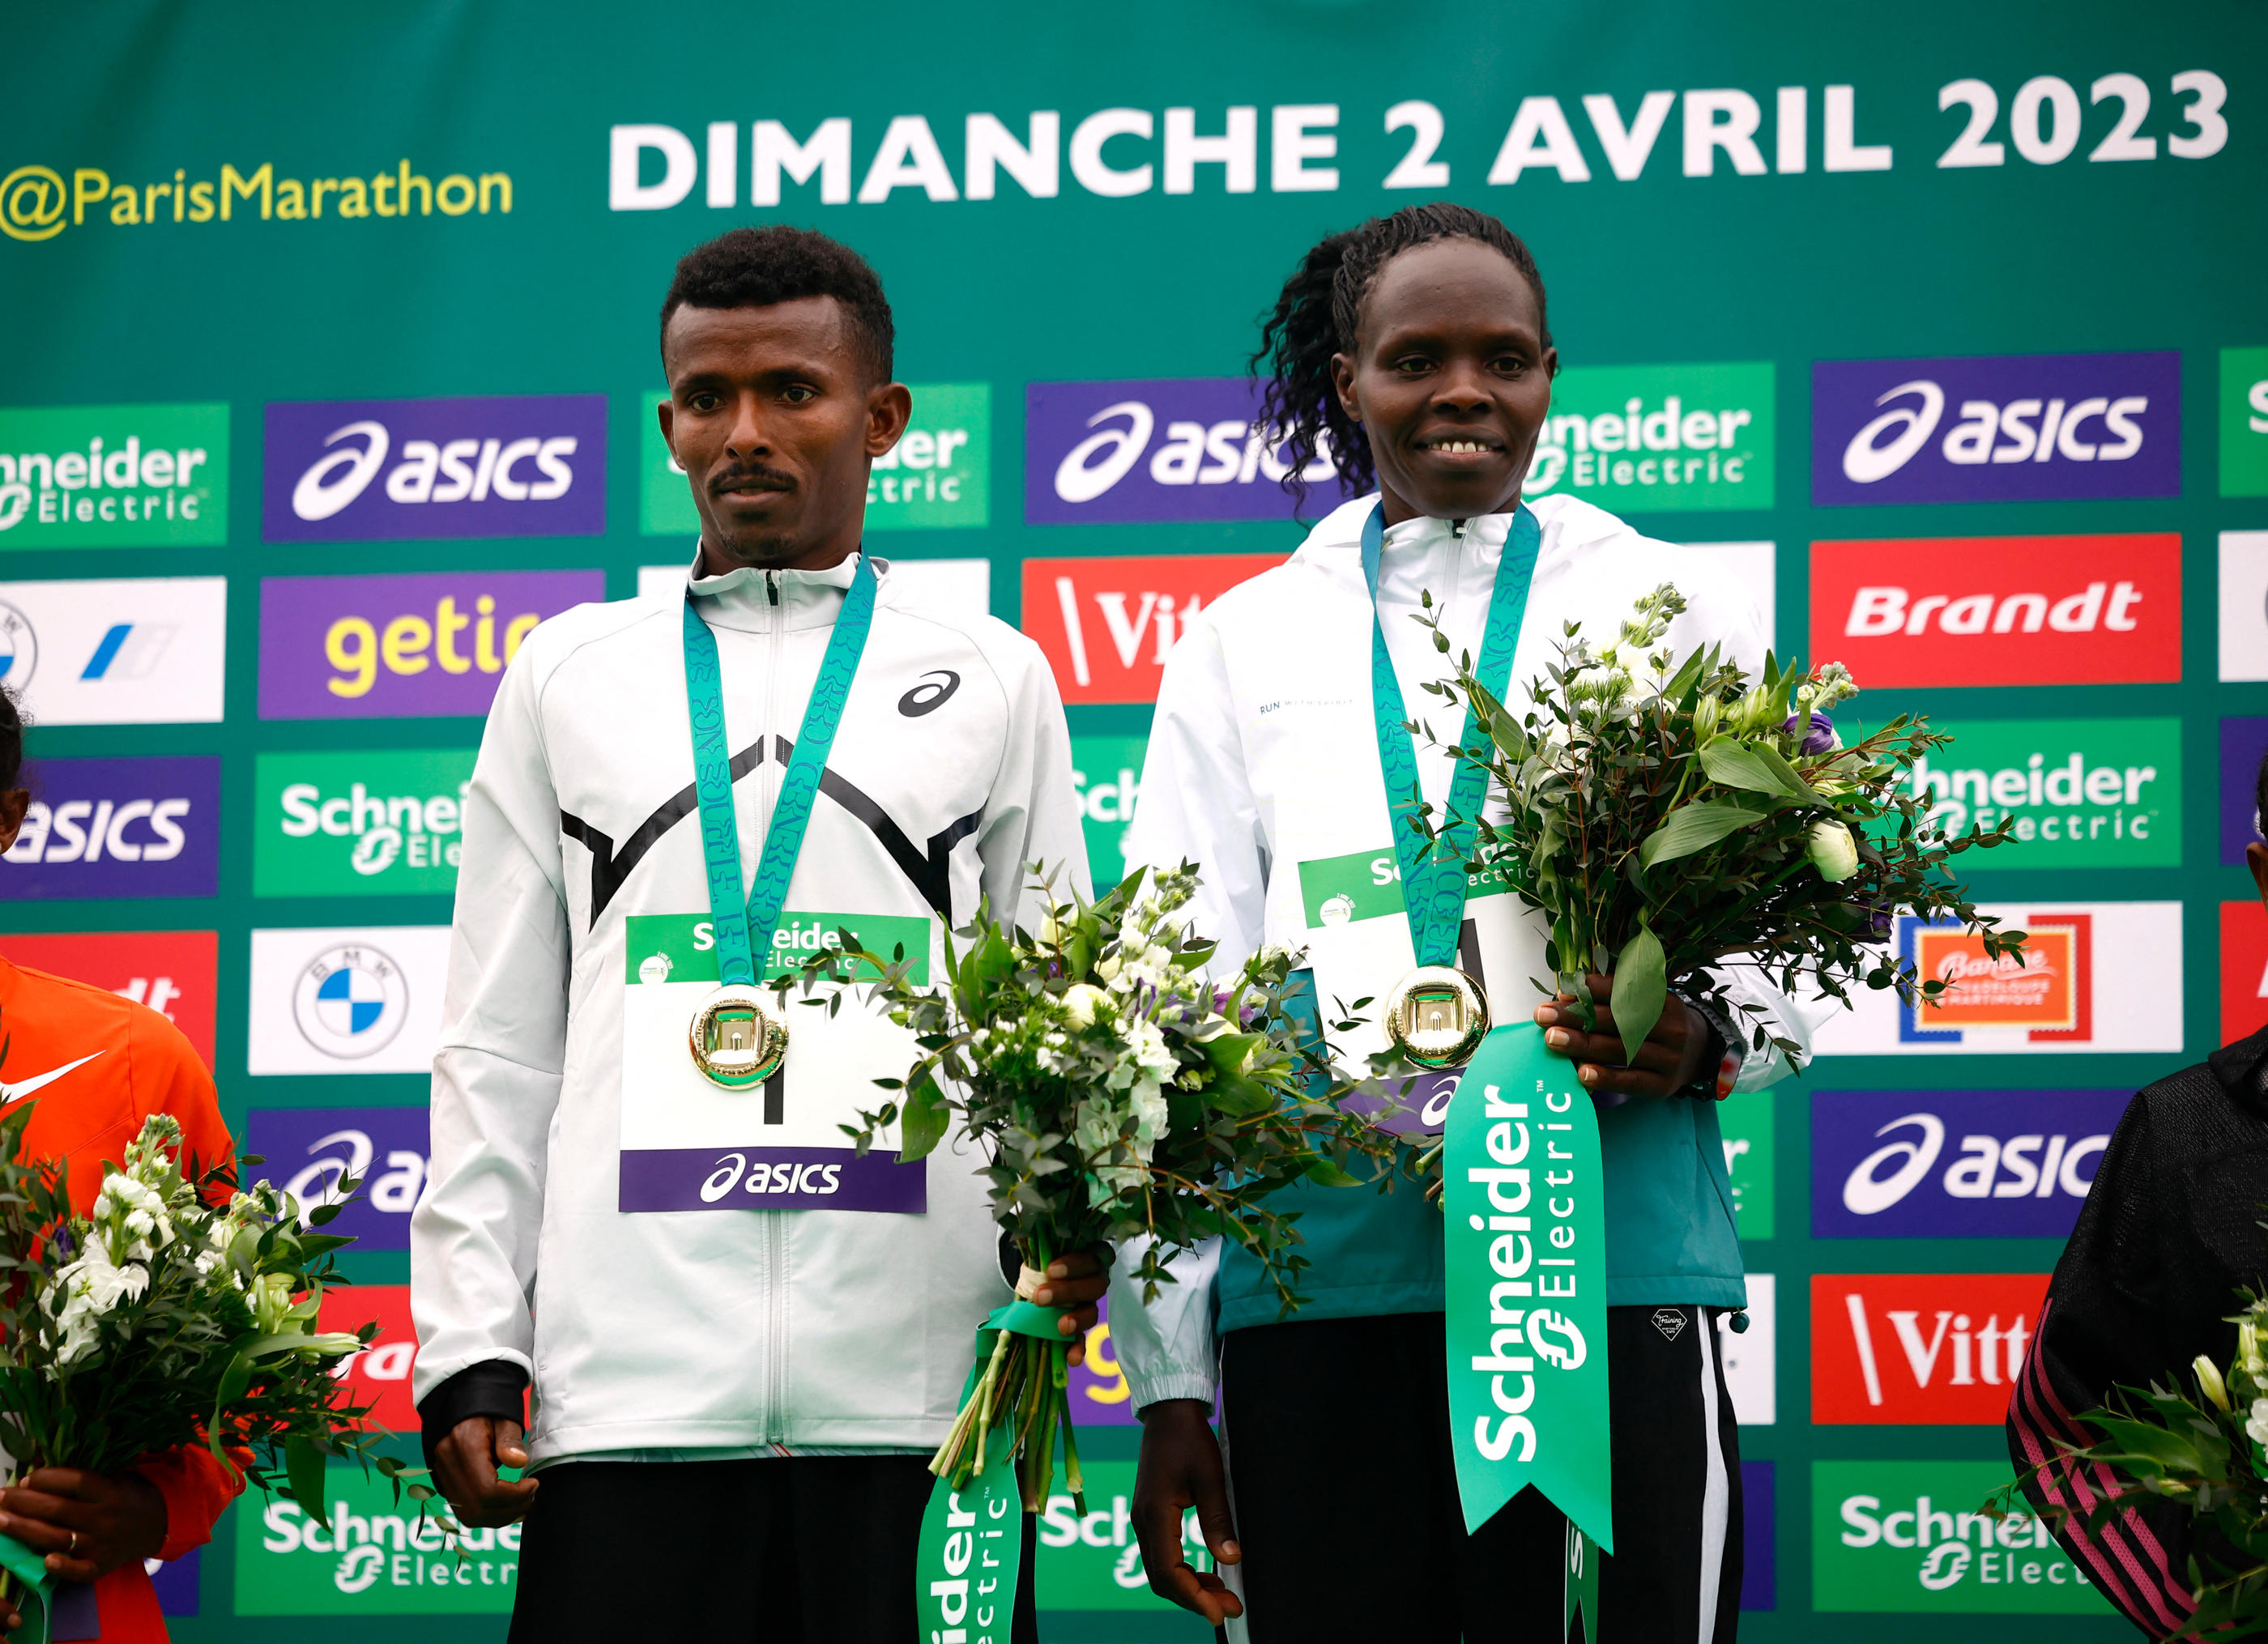 L’année dernière, le marathon de Paris avait sacré l’Éthiopien Abeje Ayana et la Kenyane Helah Kiprop. Reuters/Sarah Meyssonnier